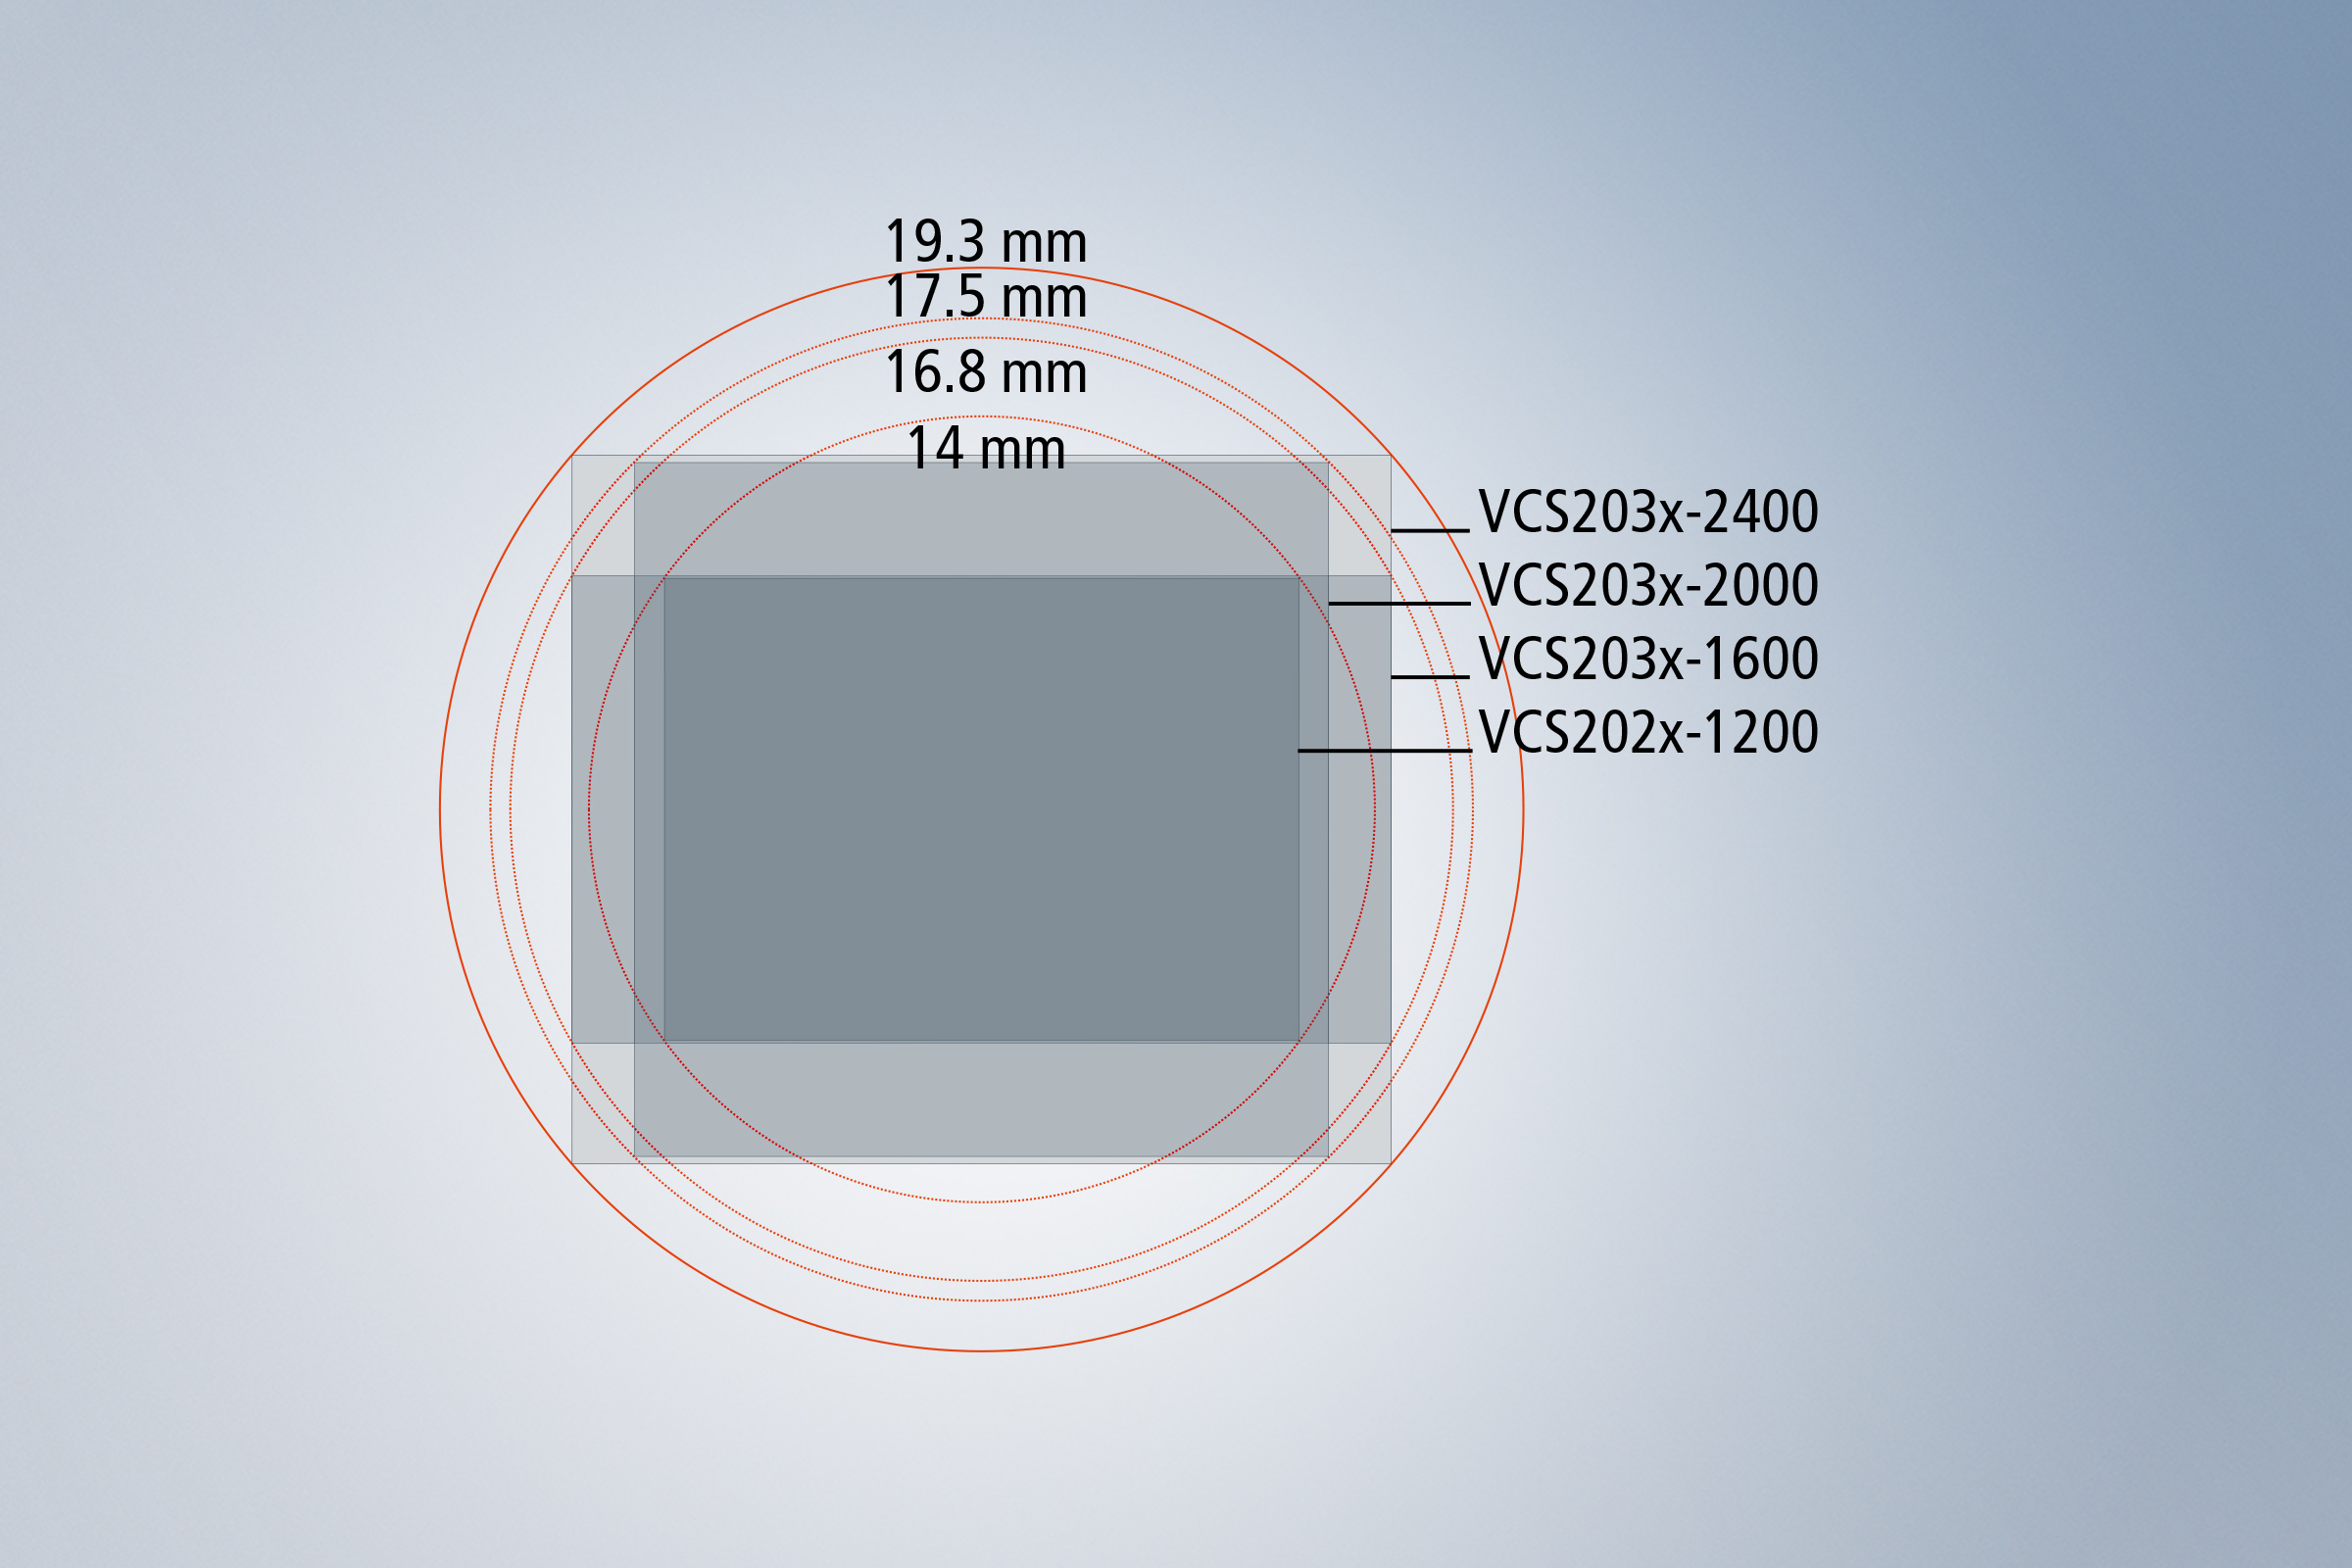 使用 VCS24 和目前的图像传感器最高可以实现 3000 万像素的超高分辨率 